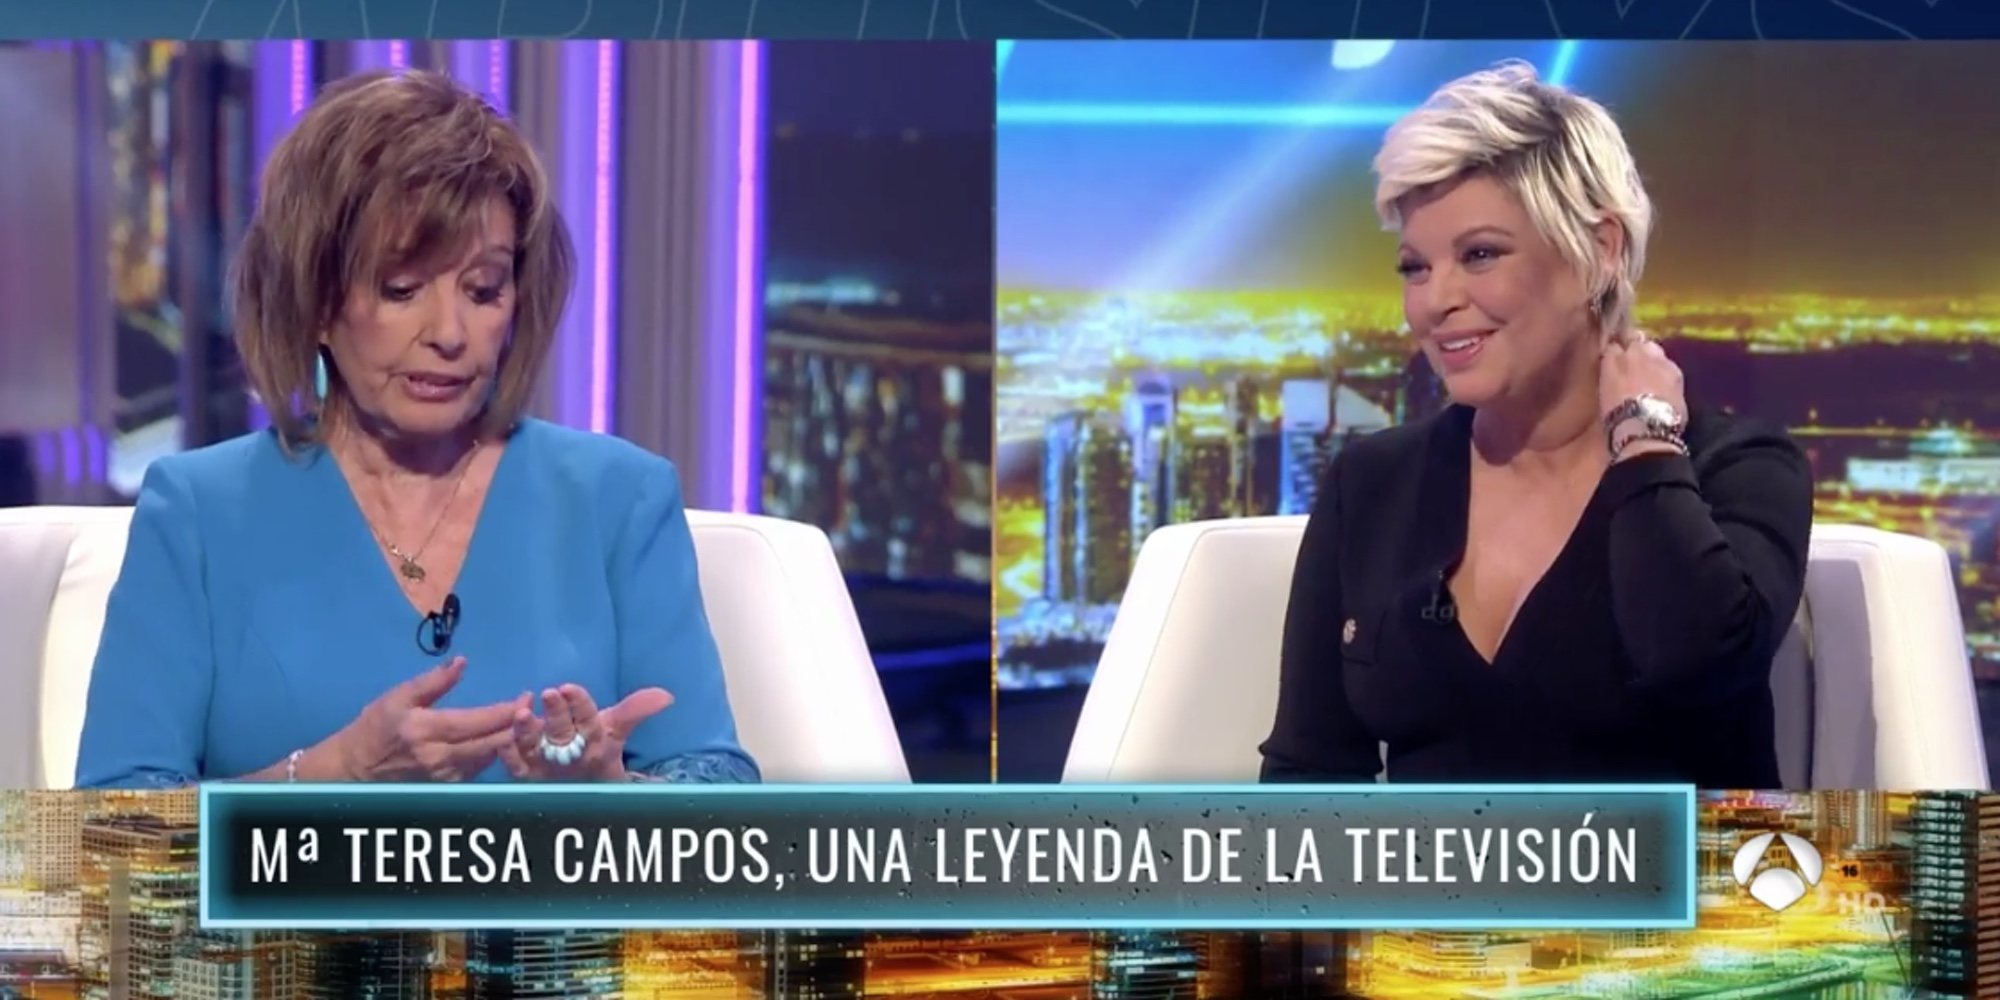 El cara a cara de María Teresa Campos y Terelu Campos: "Has sacado el saco de la mierda"